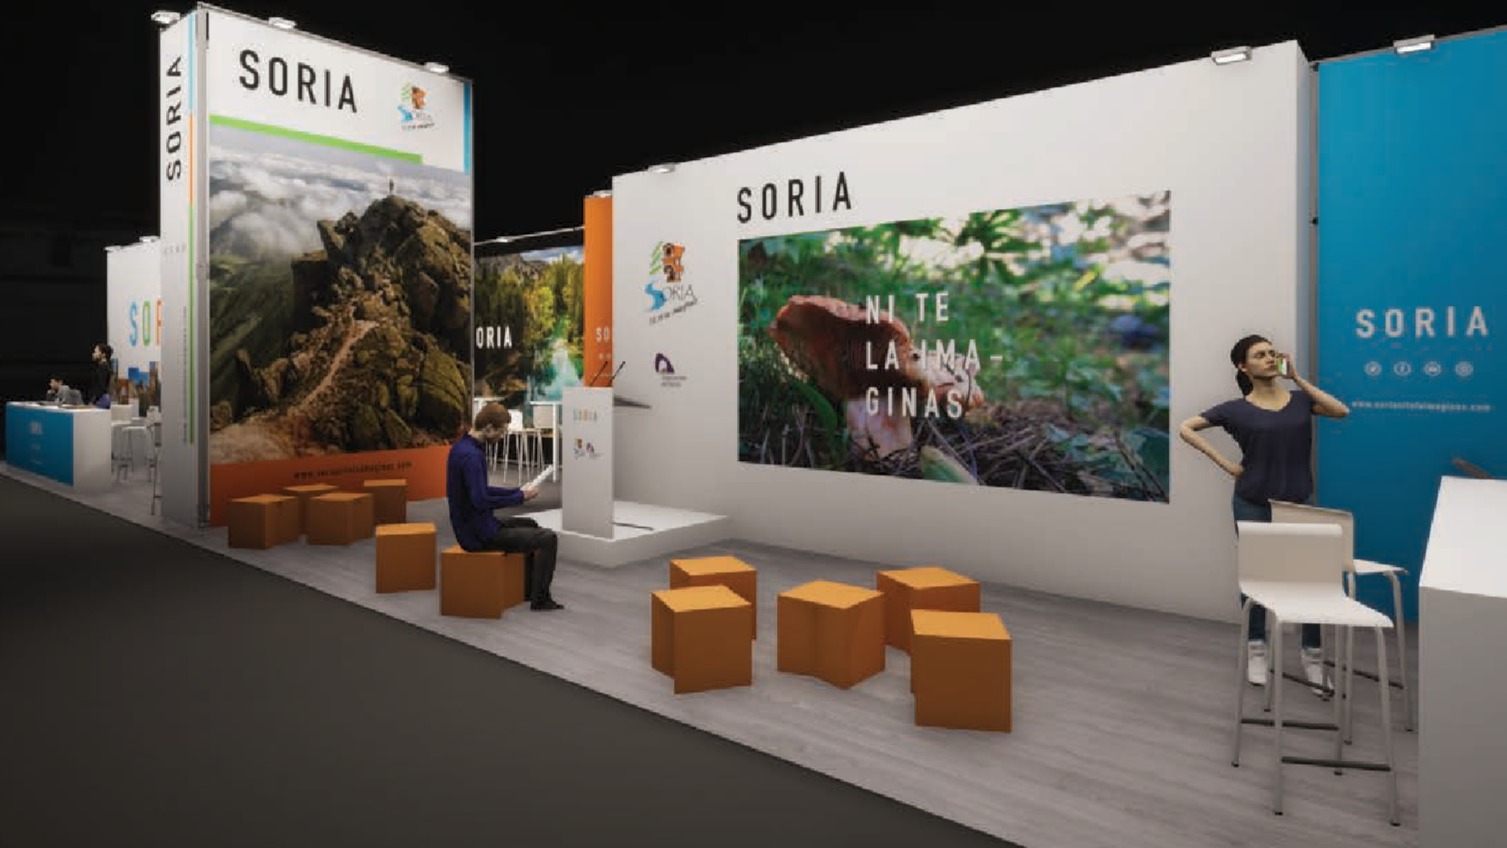 La Diputación de Soria ofrece el stand de  la Feria de Intur a ayuntamientos y asociaciones como escaparate turístico